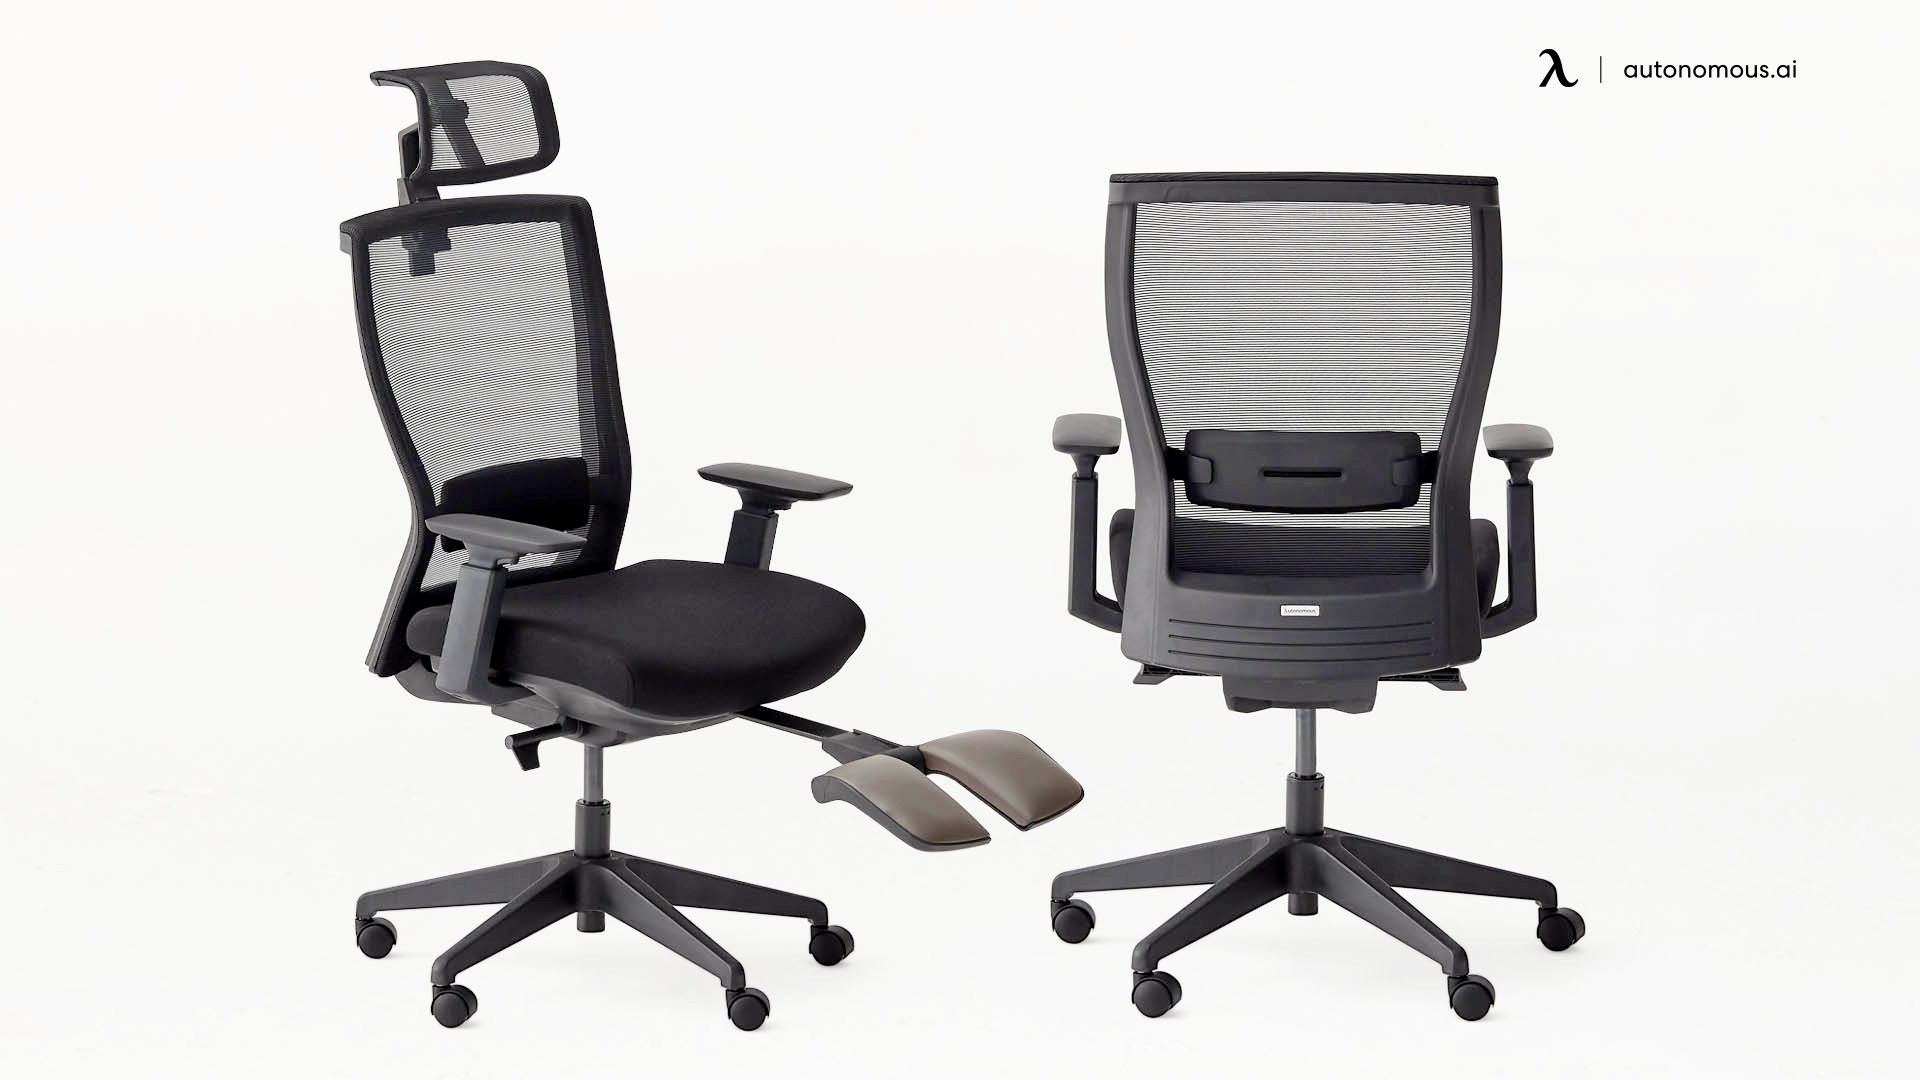 ErgoChair Recline sturdy office chairs